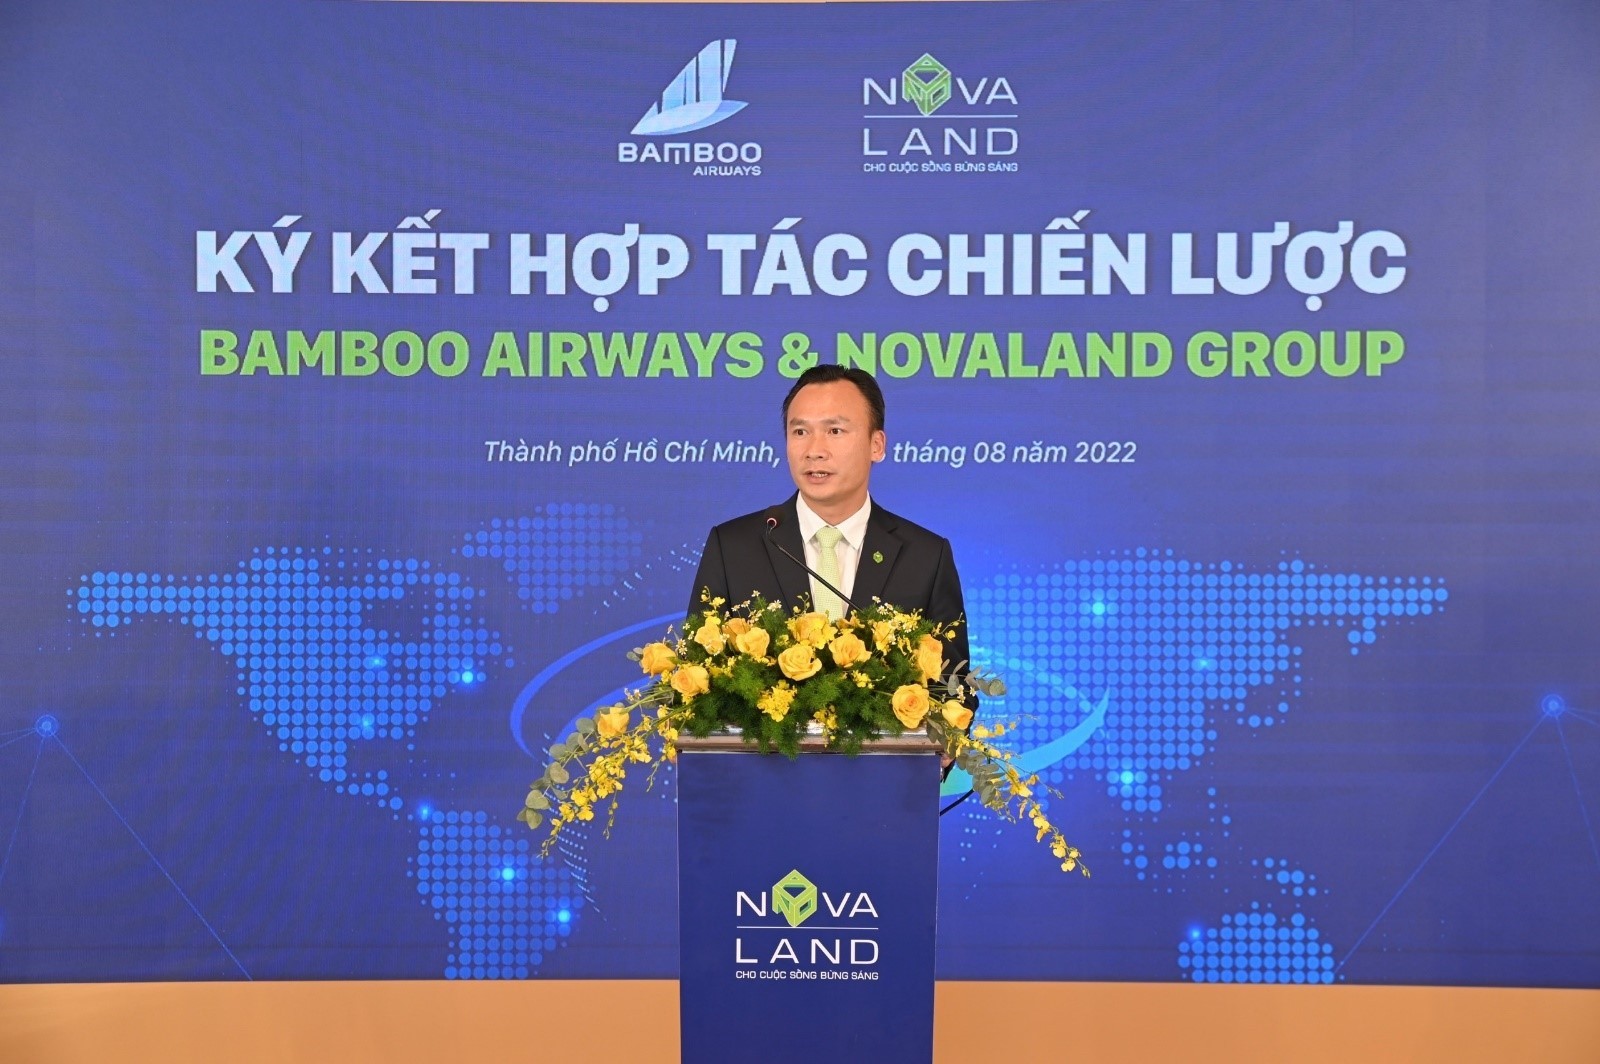 Bamboo Airways và Novaland ký kết hợp tác chiến lược gia tăng thêm tệp giá trị cho khách hàng